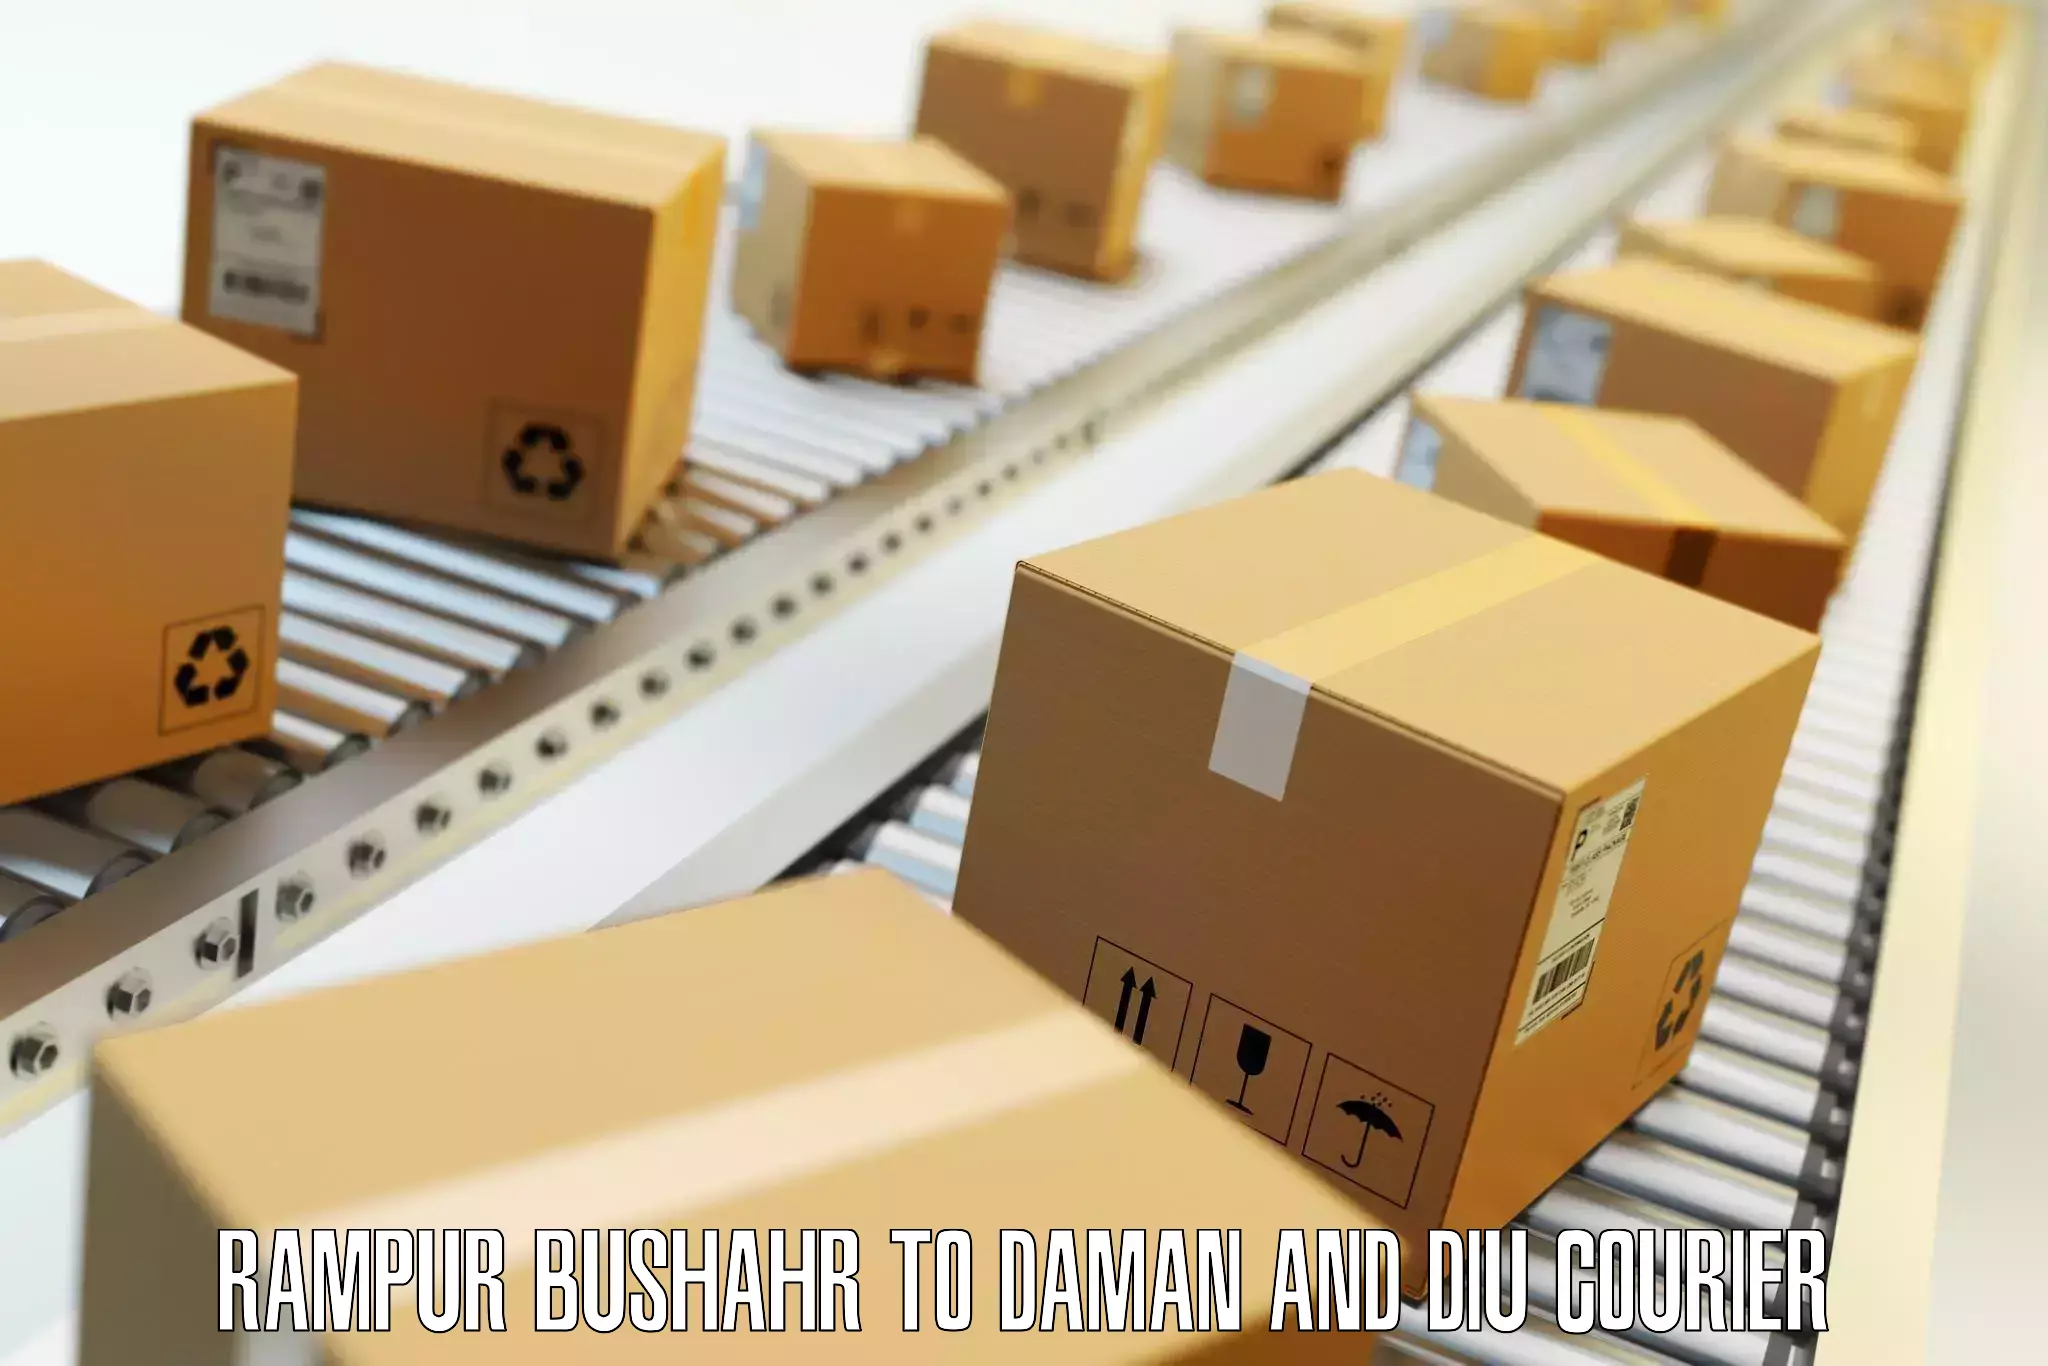 Regional luggage transport Rampur Bushahr to Daman and Diu